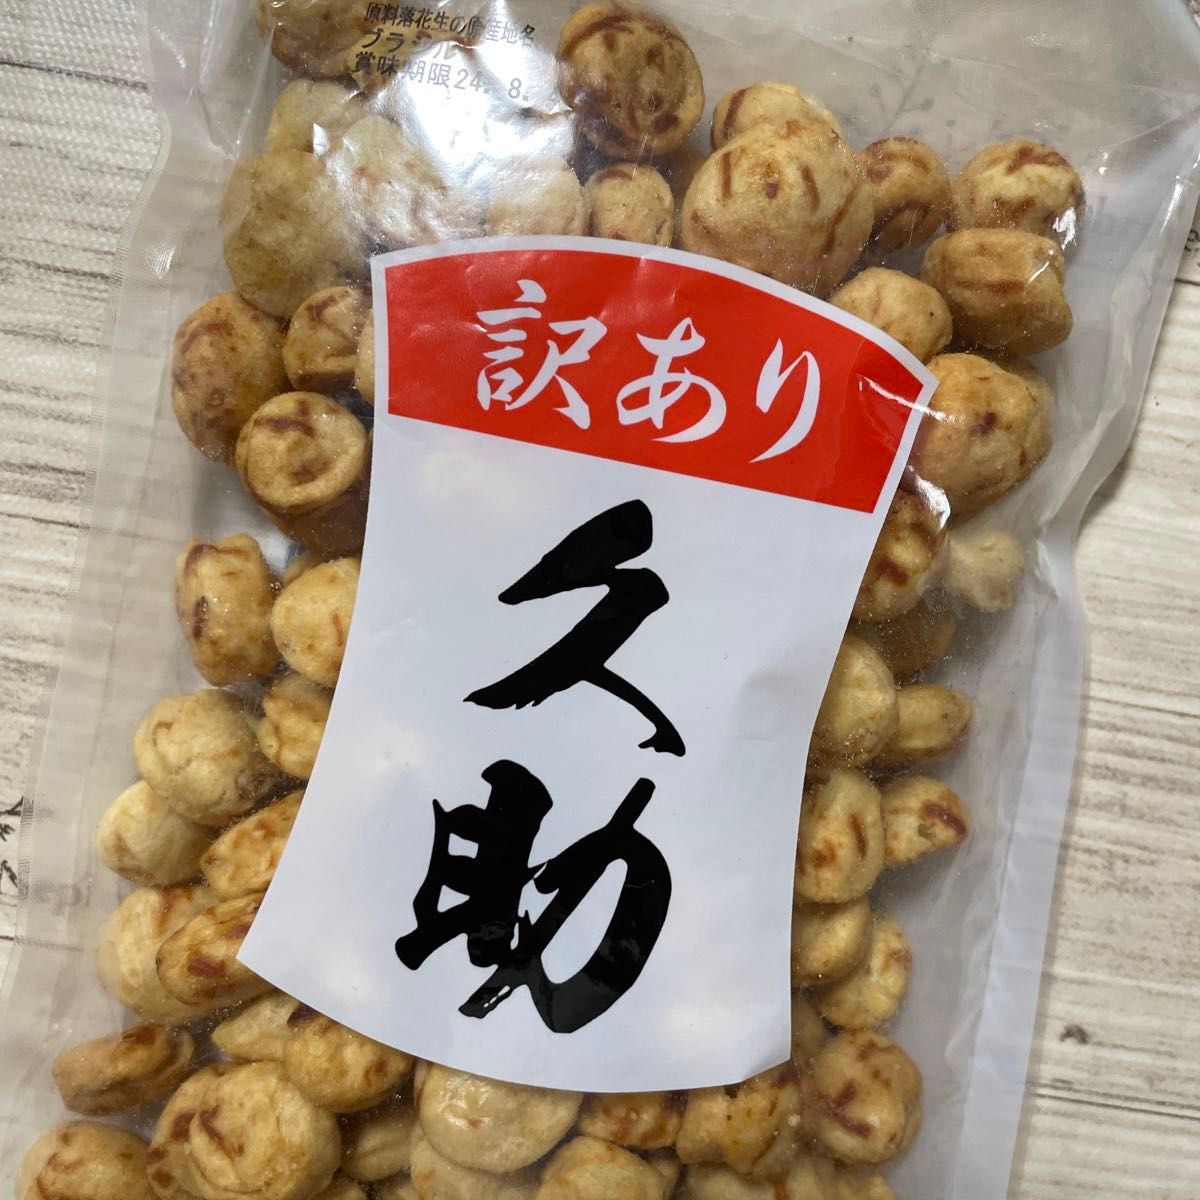 いかピー 久助 豆菓子 南風堂 福岡銘菓 2袋セット 訳あり アウトレット品